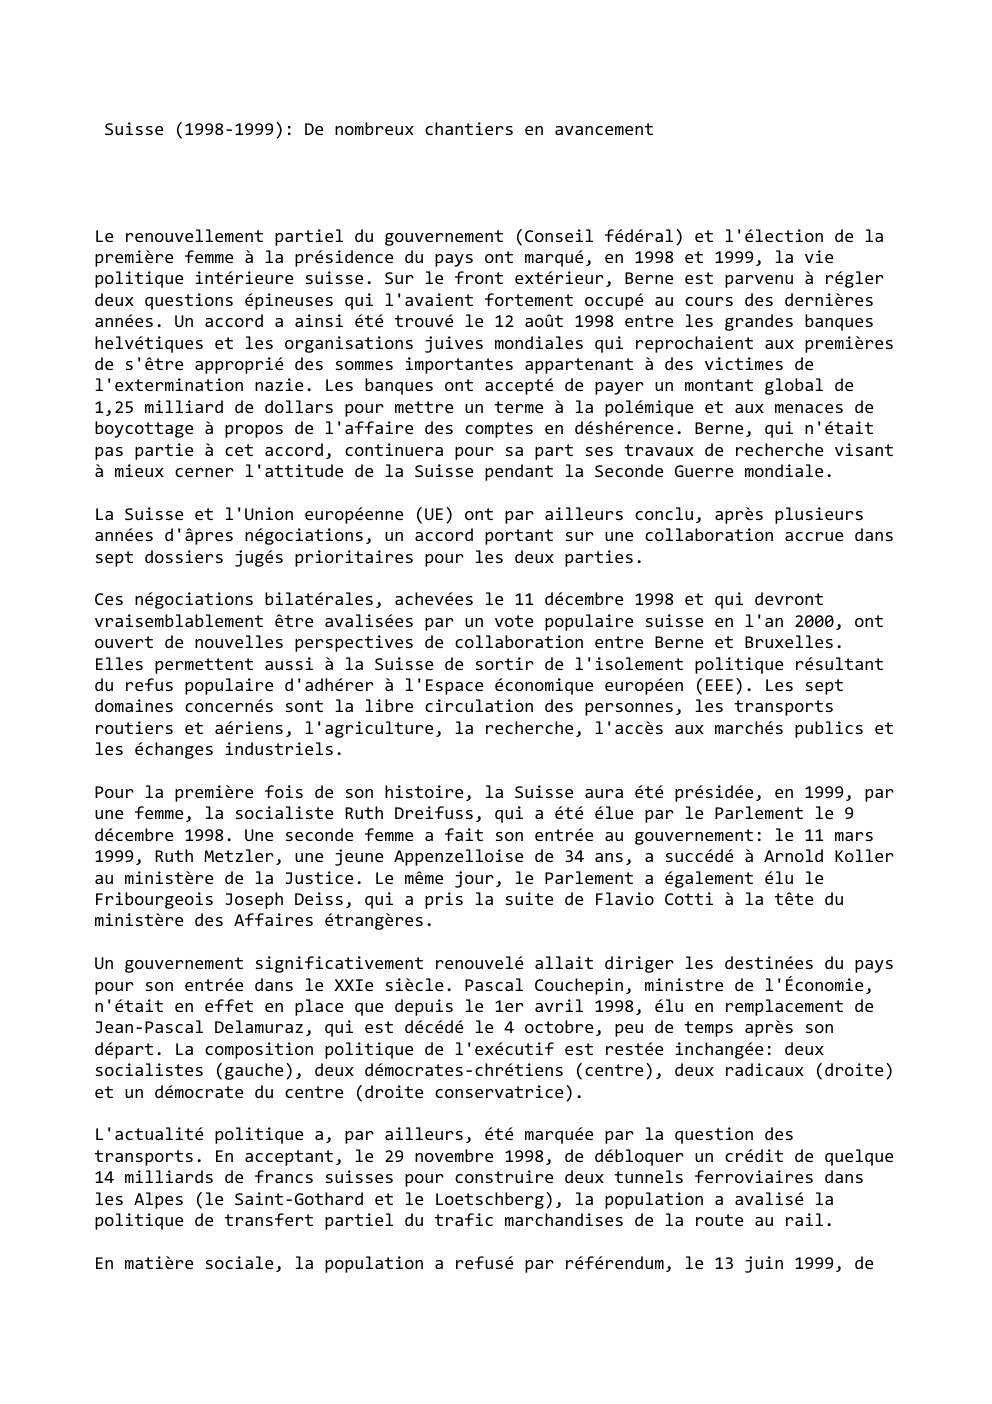 Prévisualisation du document Suisse (1998-1999): De nombreux chantiers en avancement

Le renouvellement partiel du gouvernement (Conseil fédéral) et l'élection de la
première femme...